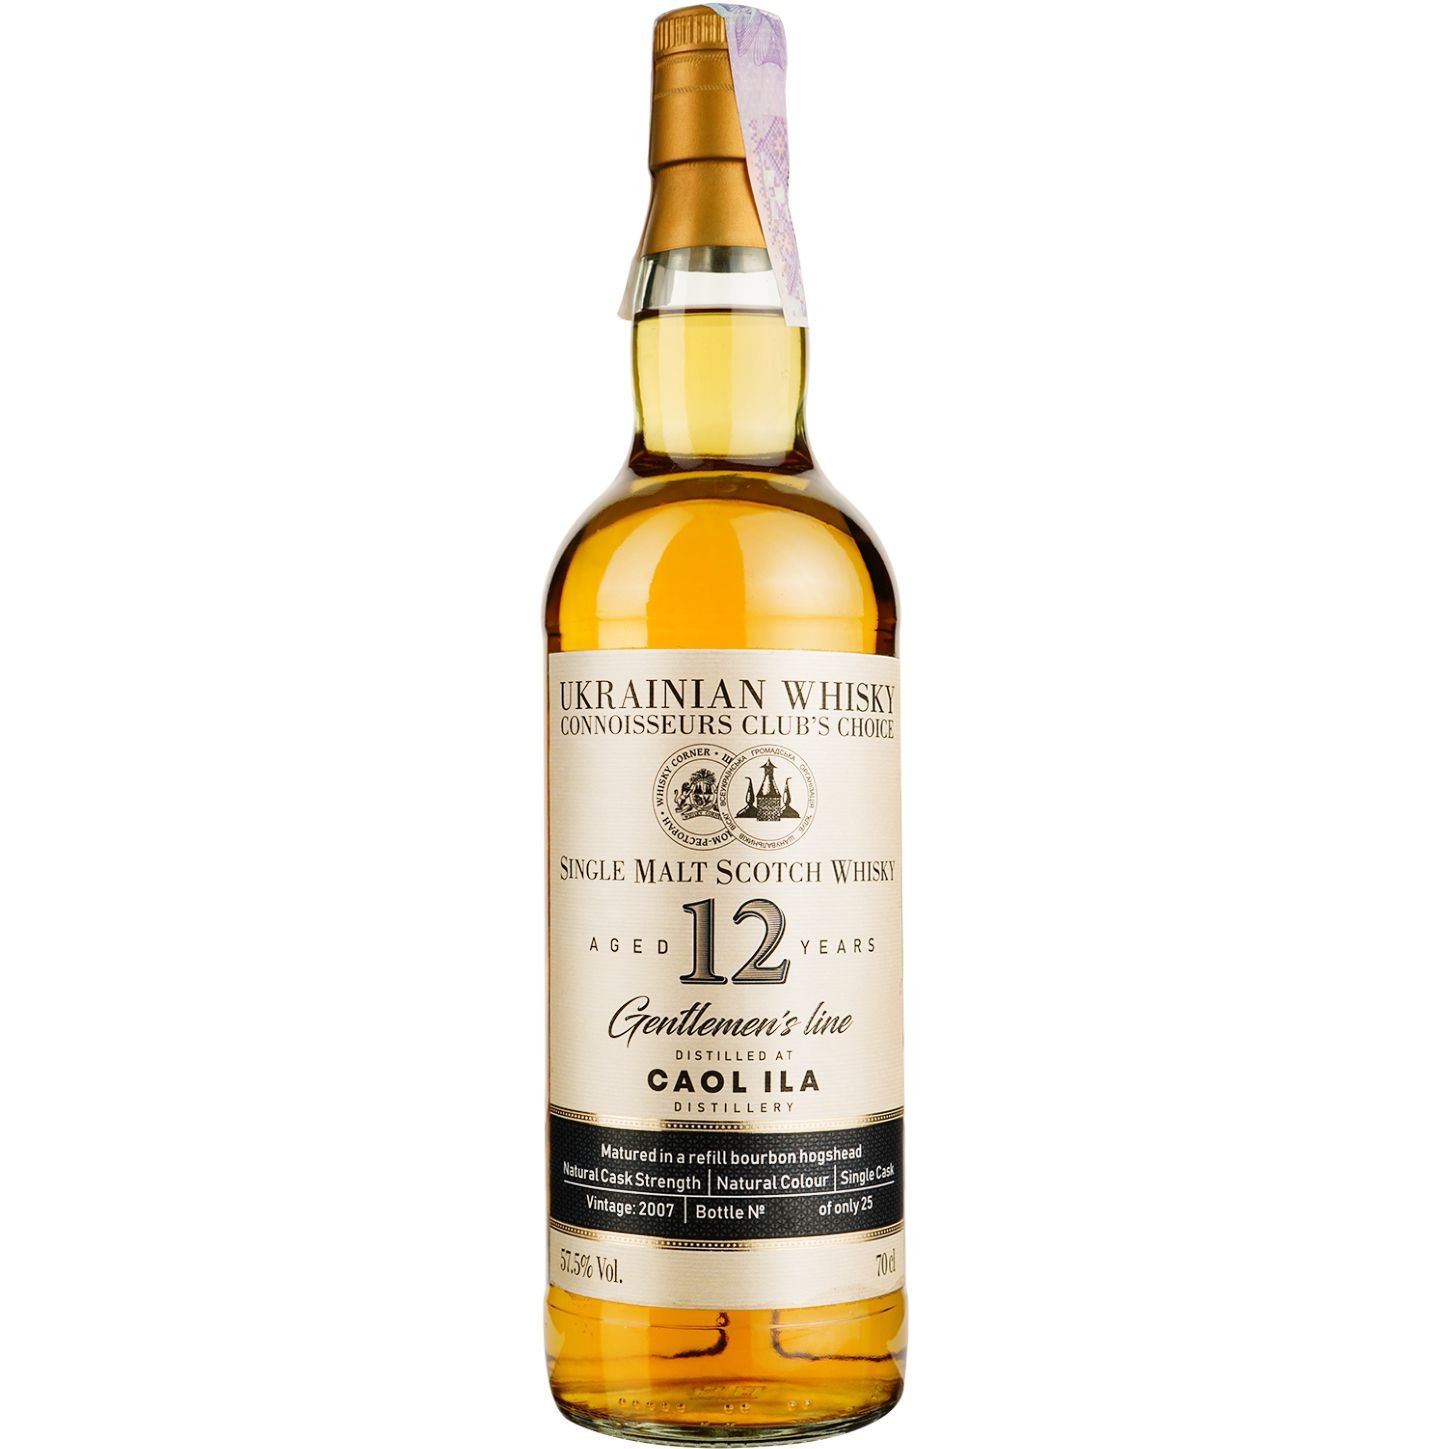 Віскі Caol Ila 12 Years Old Single Malt Scotch Whisky, у подарунковій упаковці, 57,5%, 0,7 л - фото 2